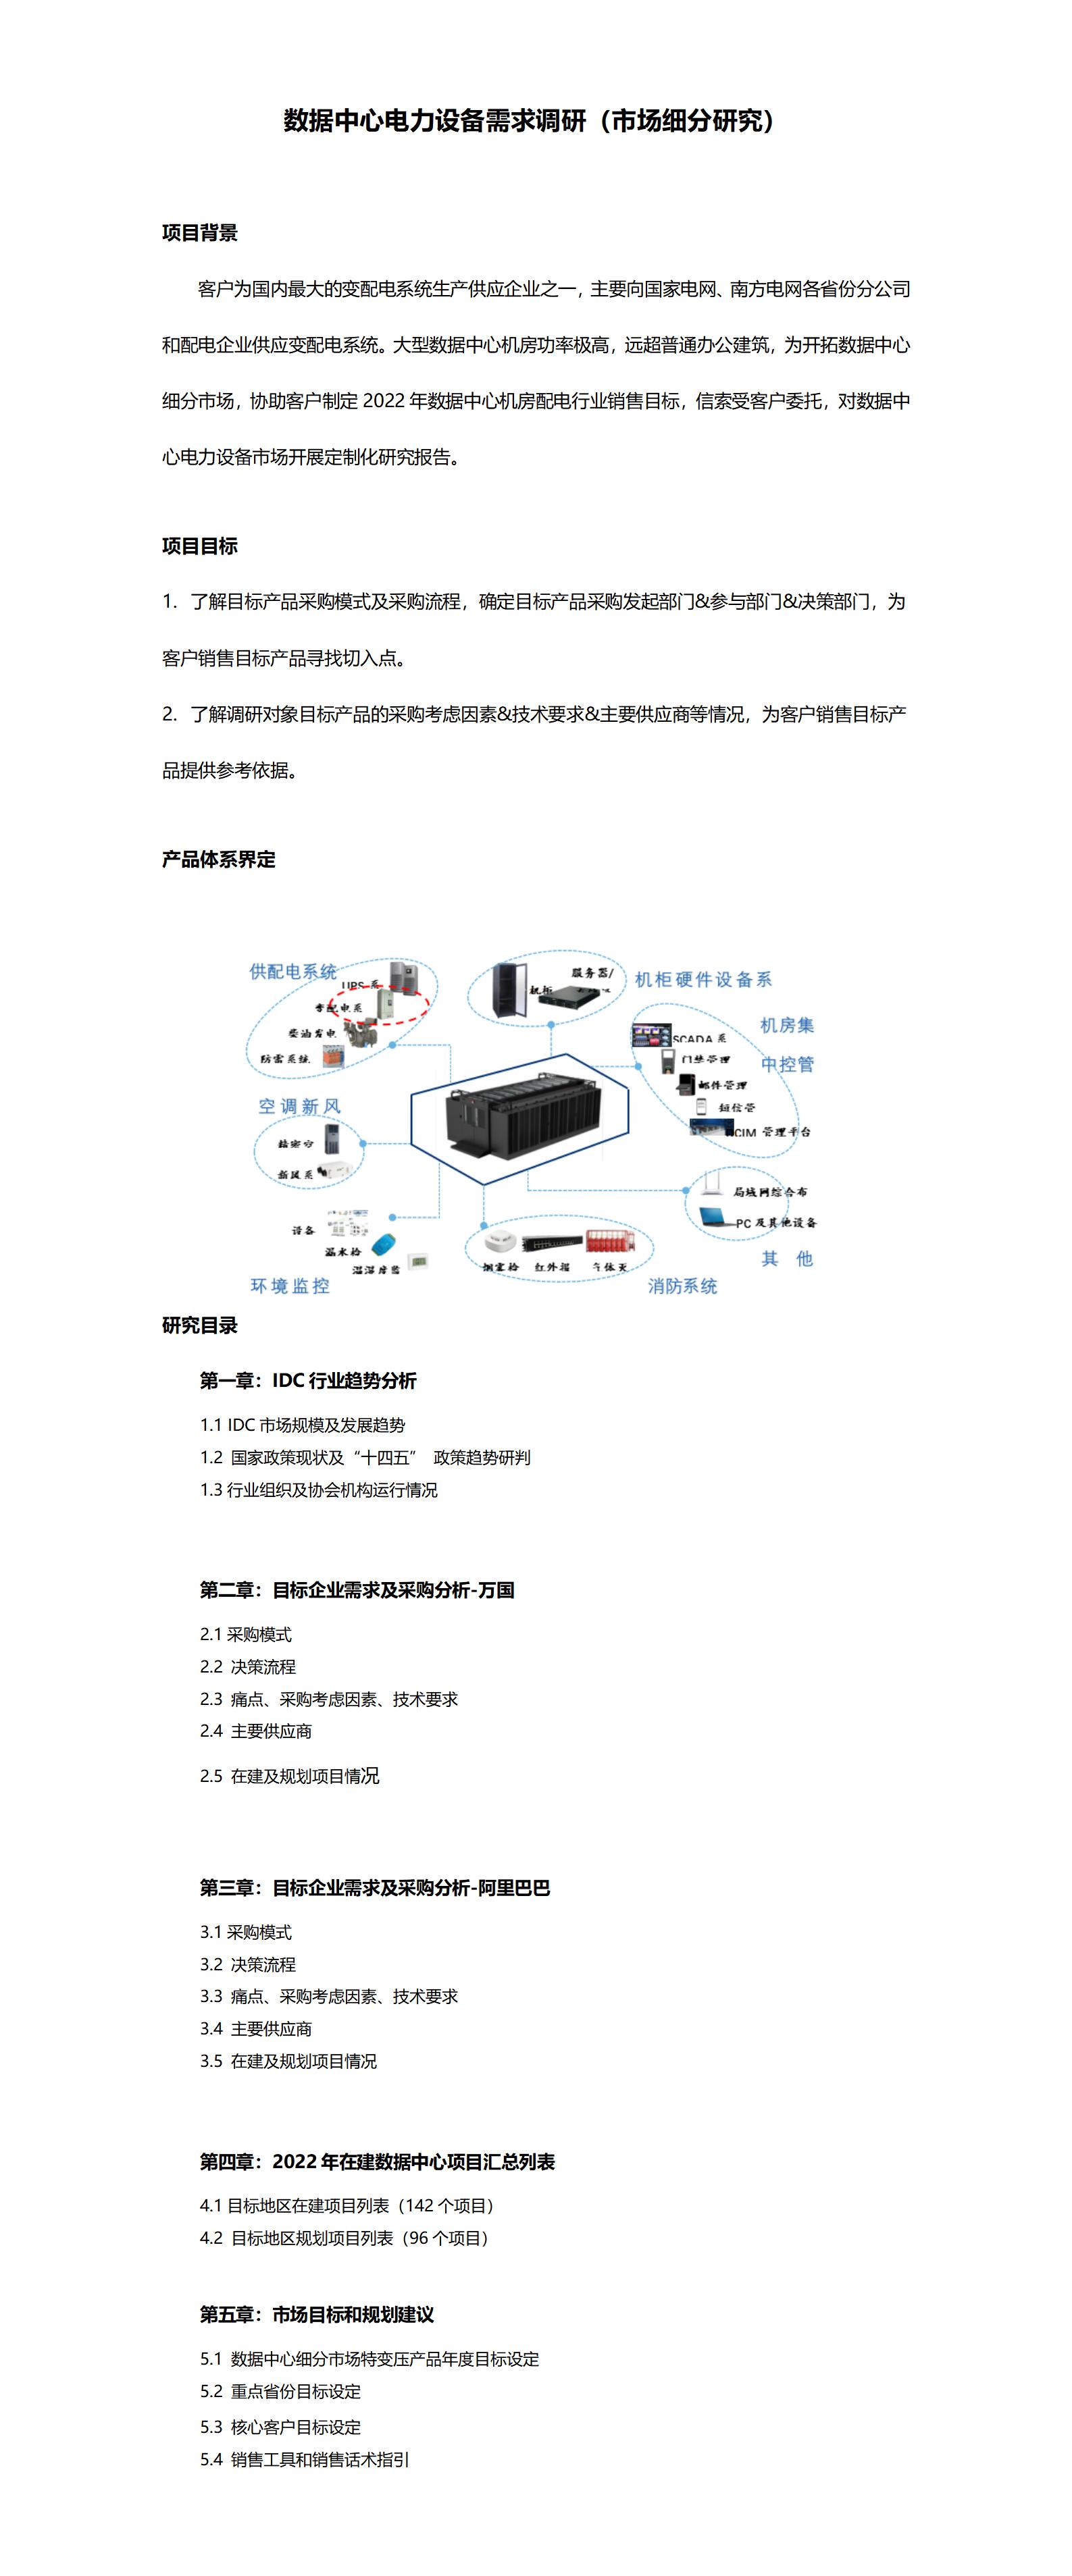 数据中心电力设备需求调研（市场细分研究）_01(1).jpg